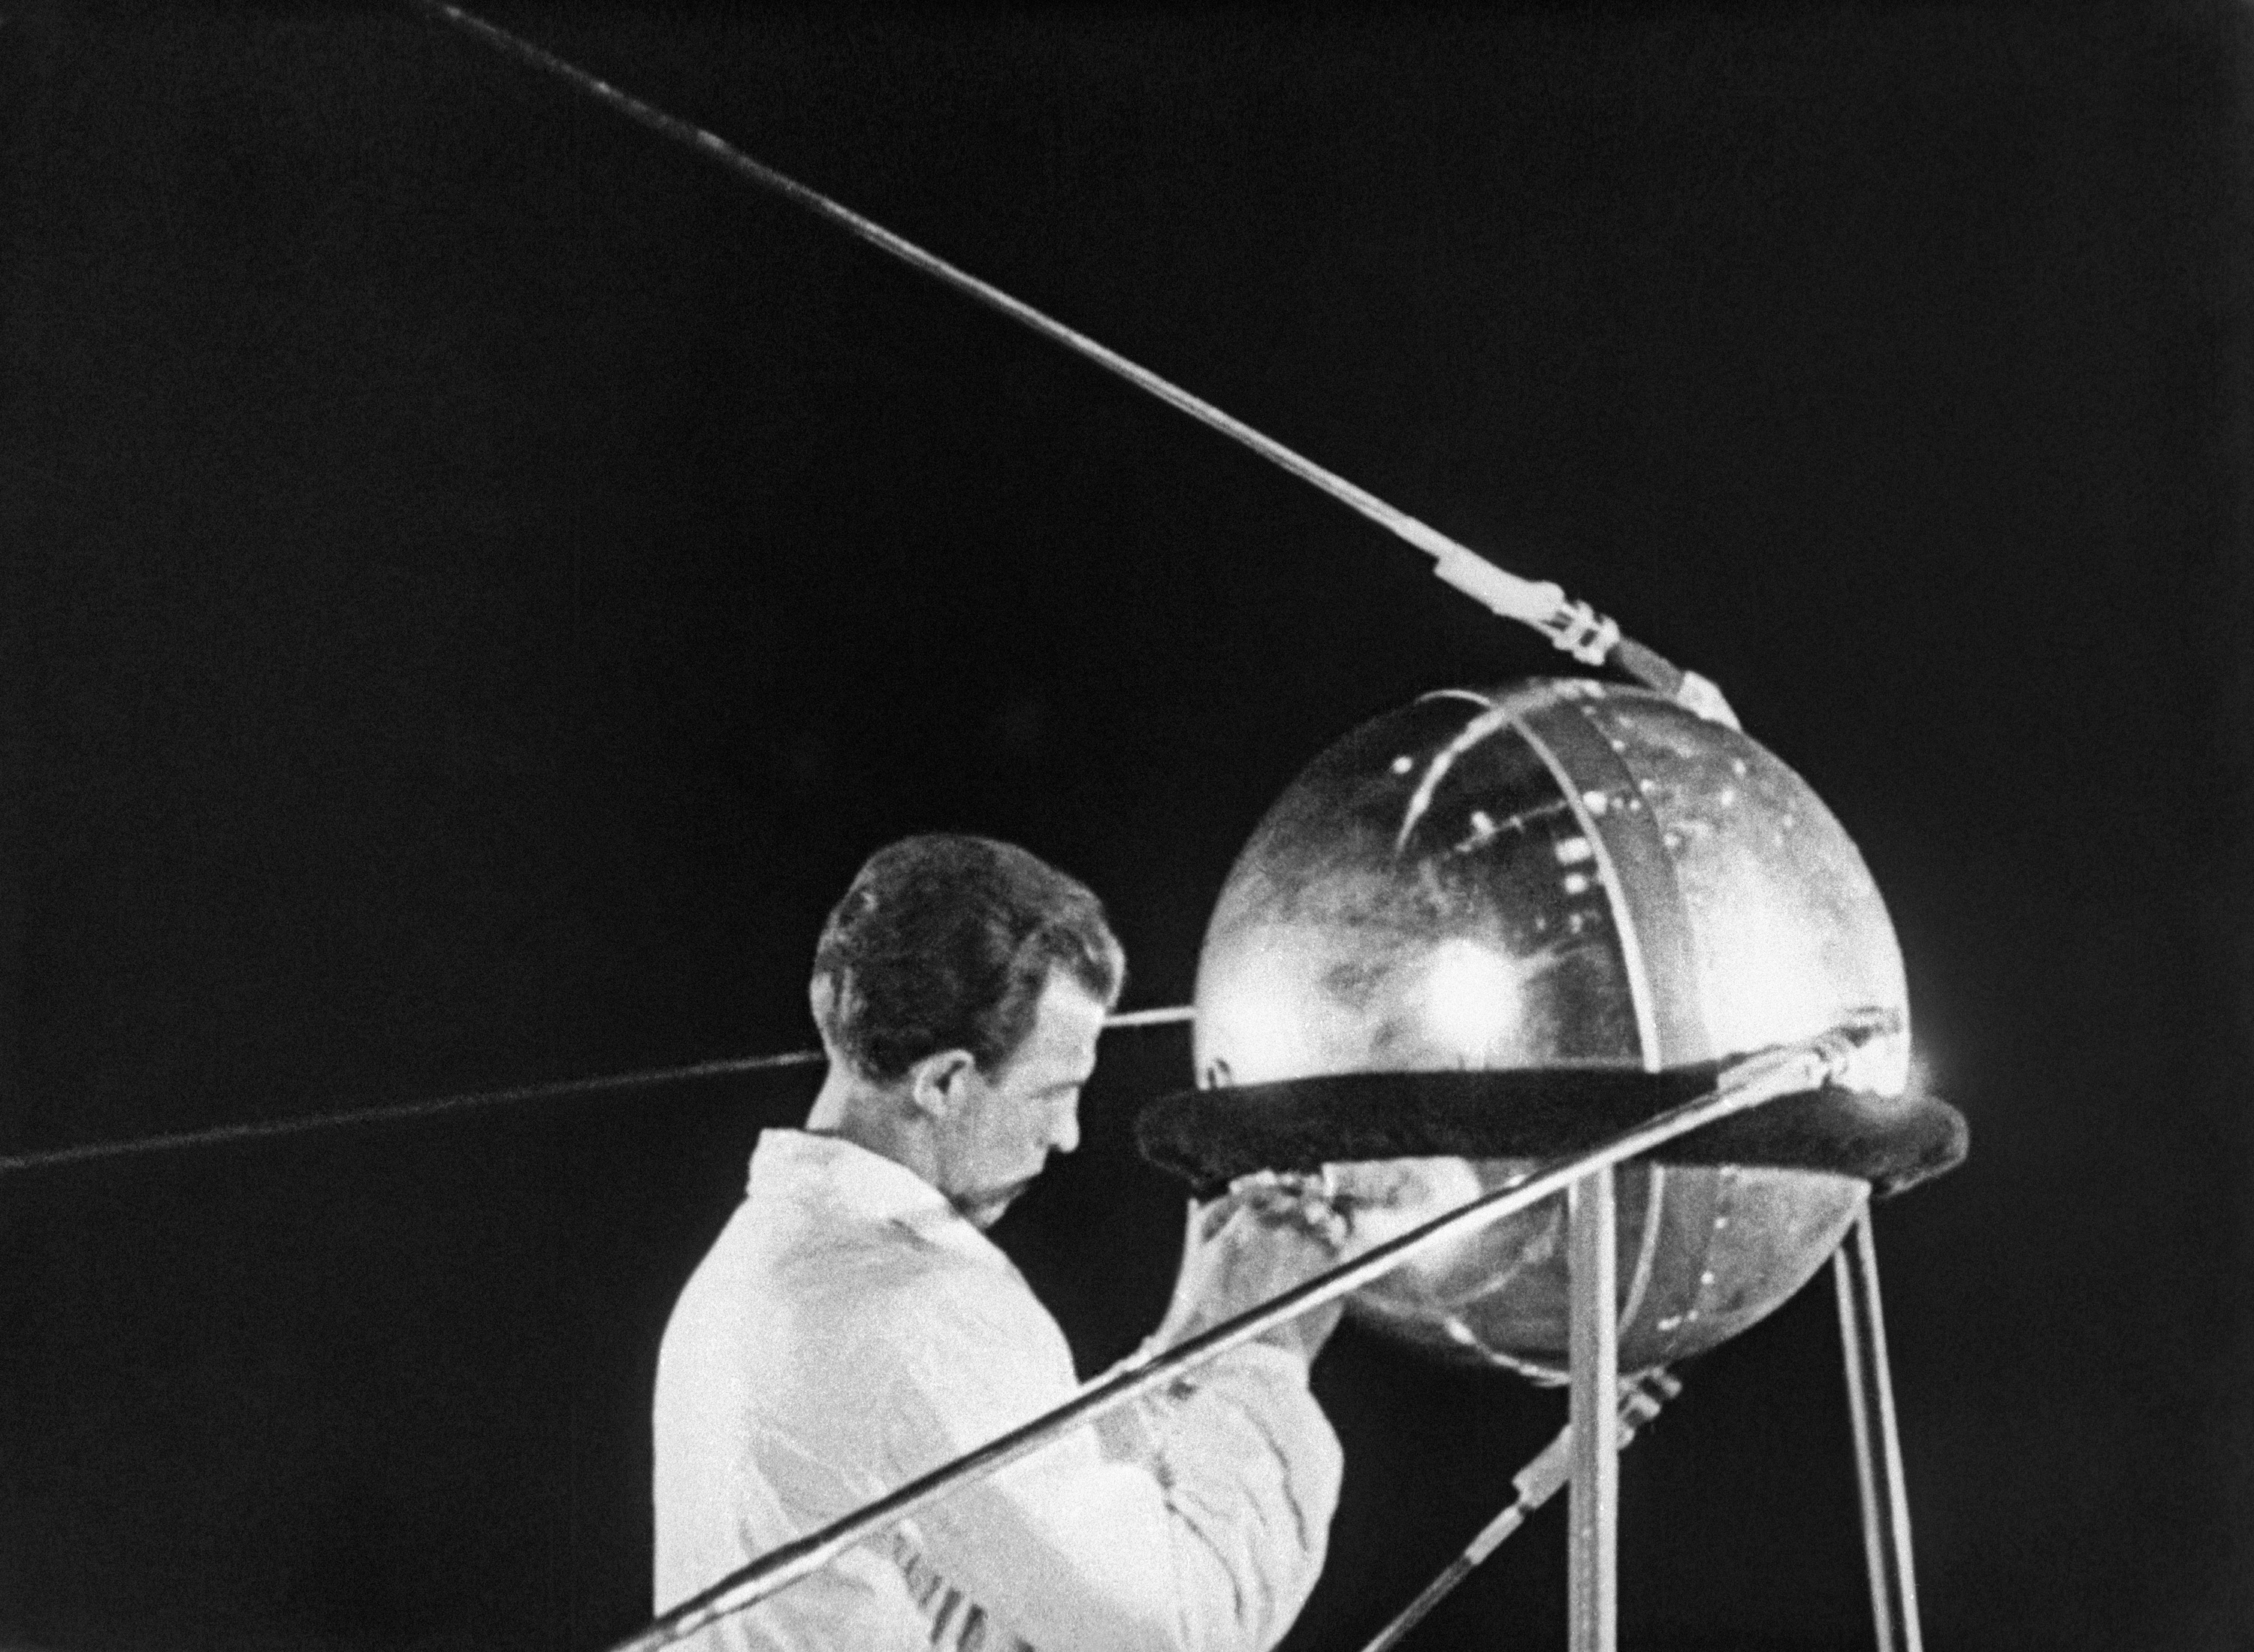 Kuha mula sa pelikulang inihandog sa kauna-unahang artipisyal na Earth satellite ng Soviet, Setyembre 1, 1957.